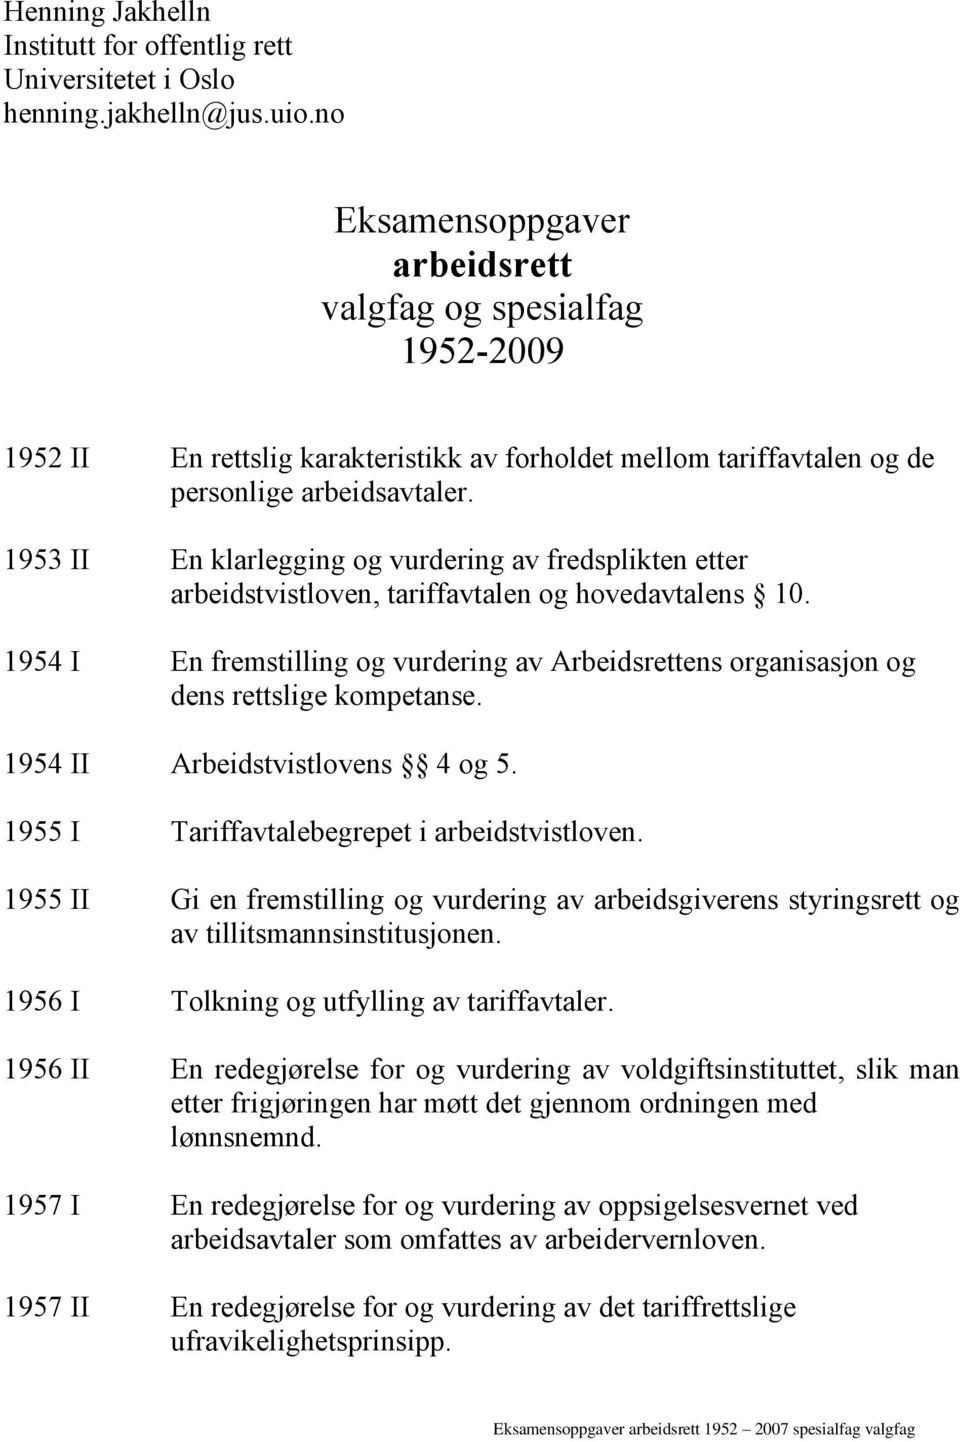 1953 II En klarlegging og vurdering av fredsplikten etter arbeidstvistloven, tariffavtalen og hovedavtalens 10.